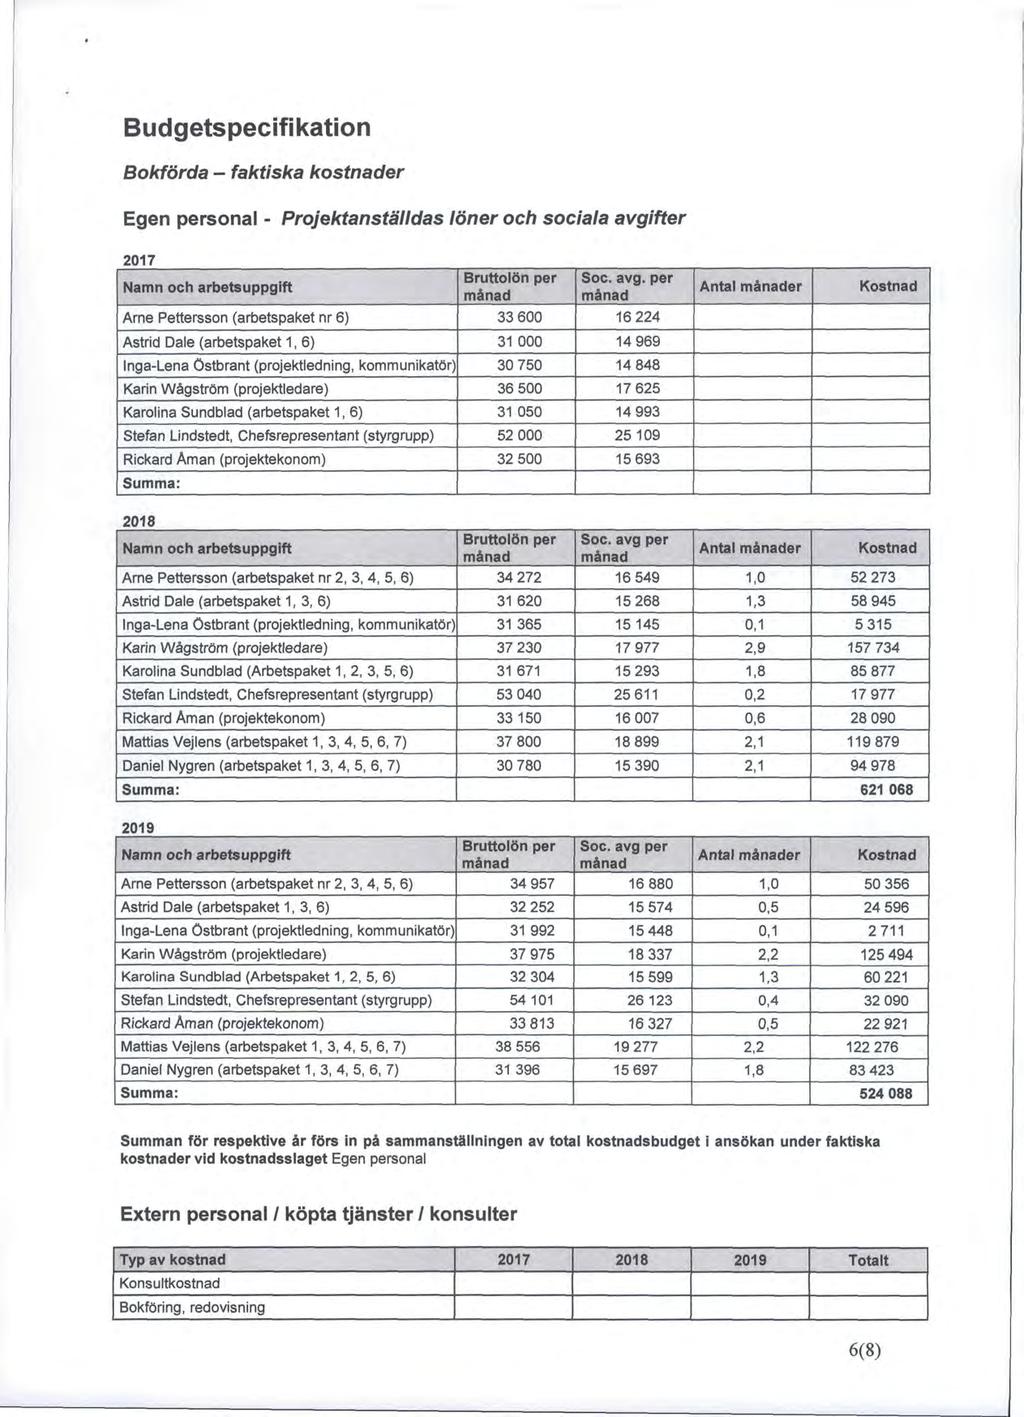 Budgetspecifikation Bokförda - faktiska kostnader Egen personal - Projektanställdas löner och sociala avgifter 2017 Namn och arbetsuppgift Arne Pettersson (arbetspaket nr 6) Bruttolön per månad 33600